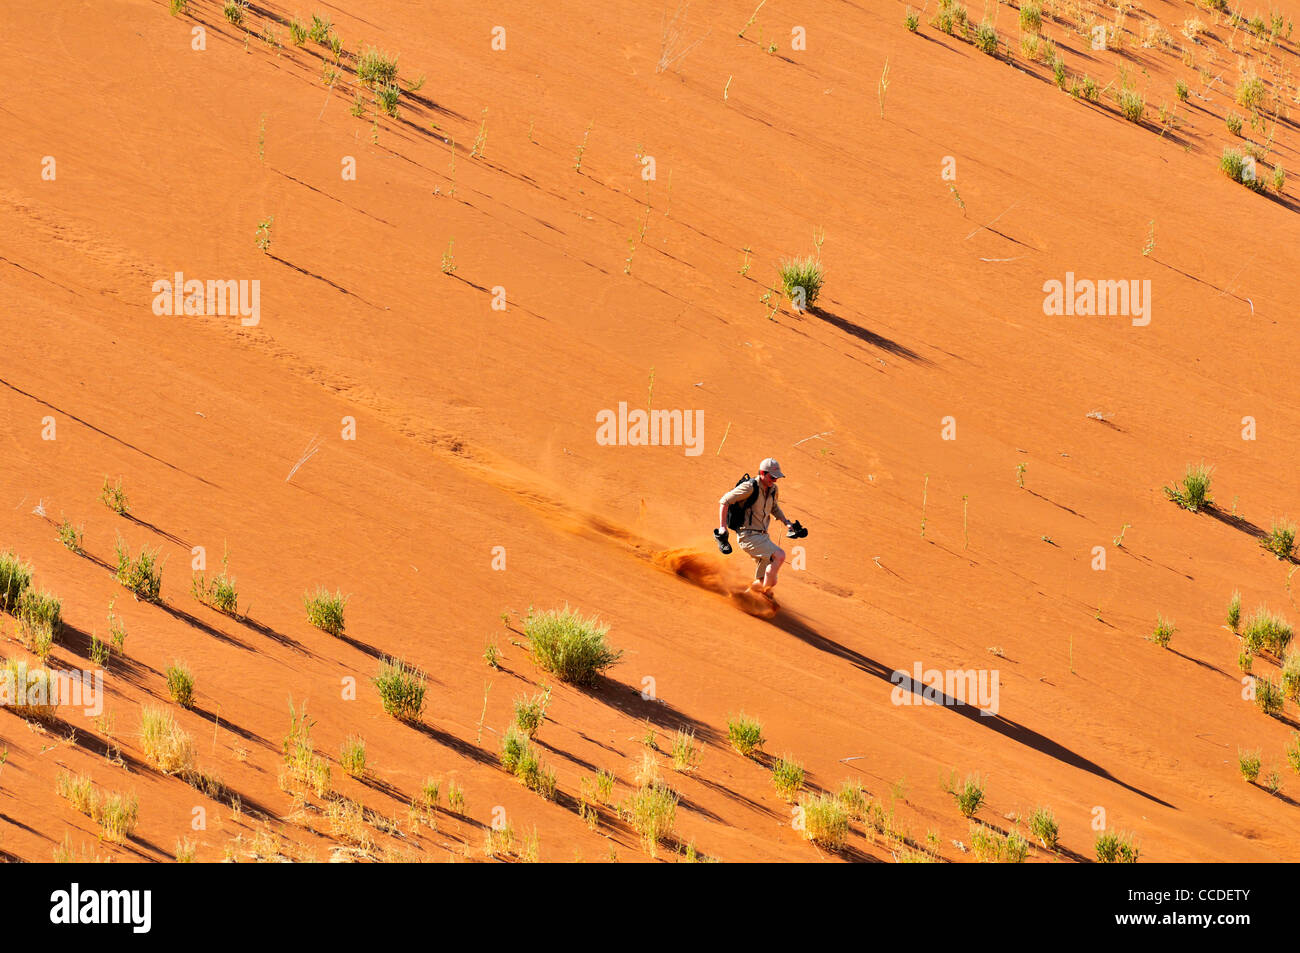 Tourist fonctionnant en bas de la dune de sable rouge de Sossusvlei / Sossus Vlei dans le désert du Namib, Namibie, Afrique du Sud Banque D'Images